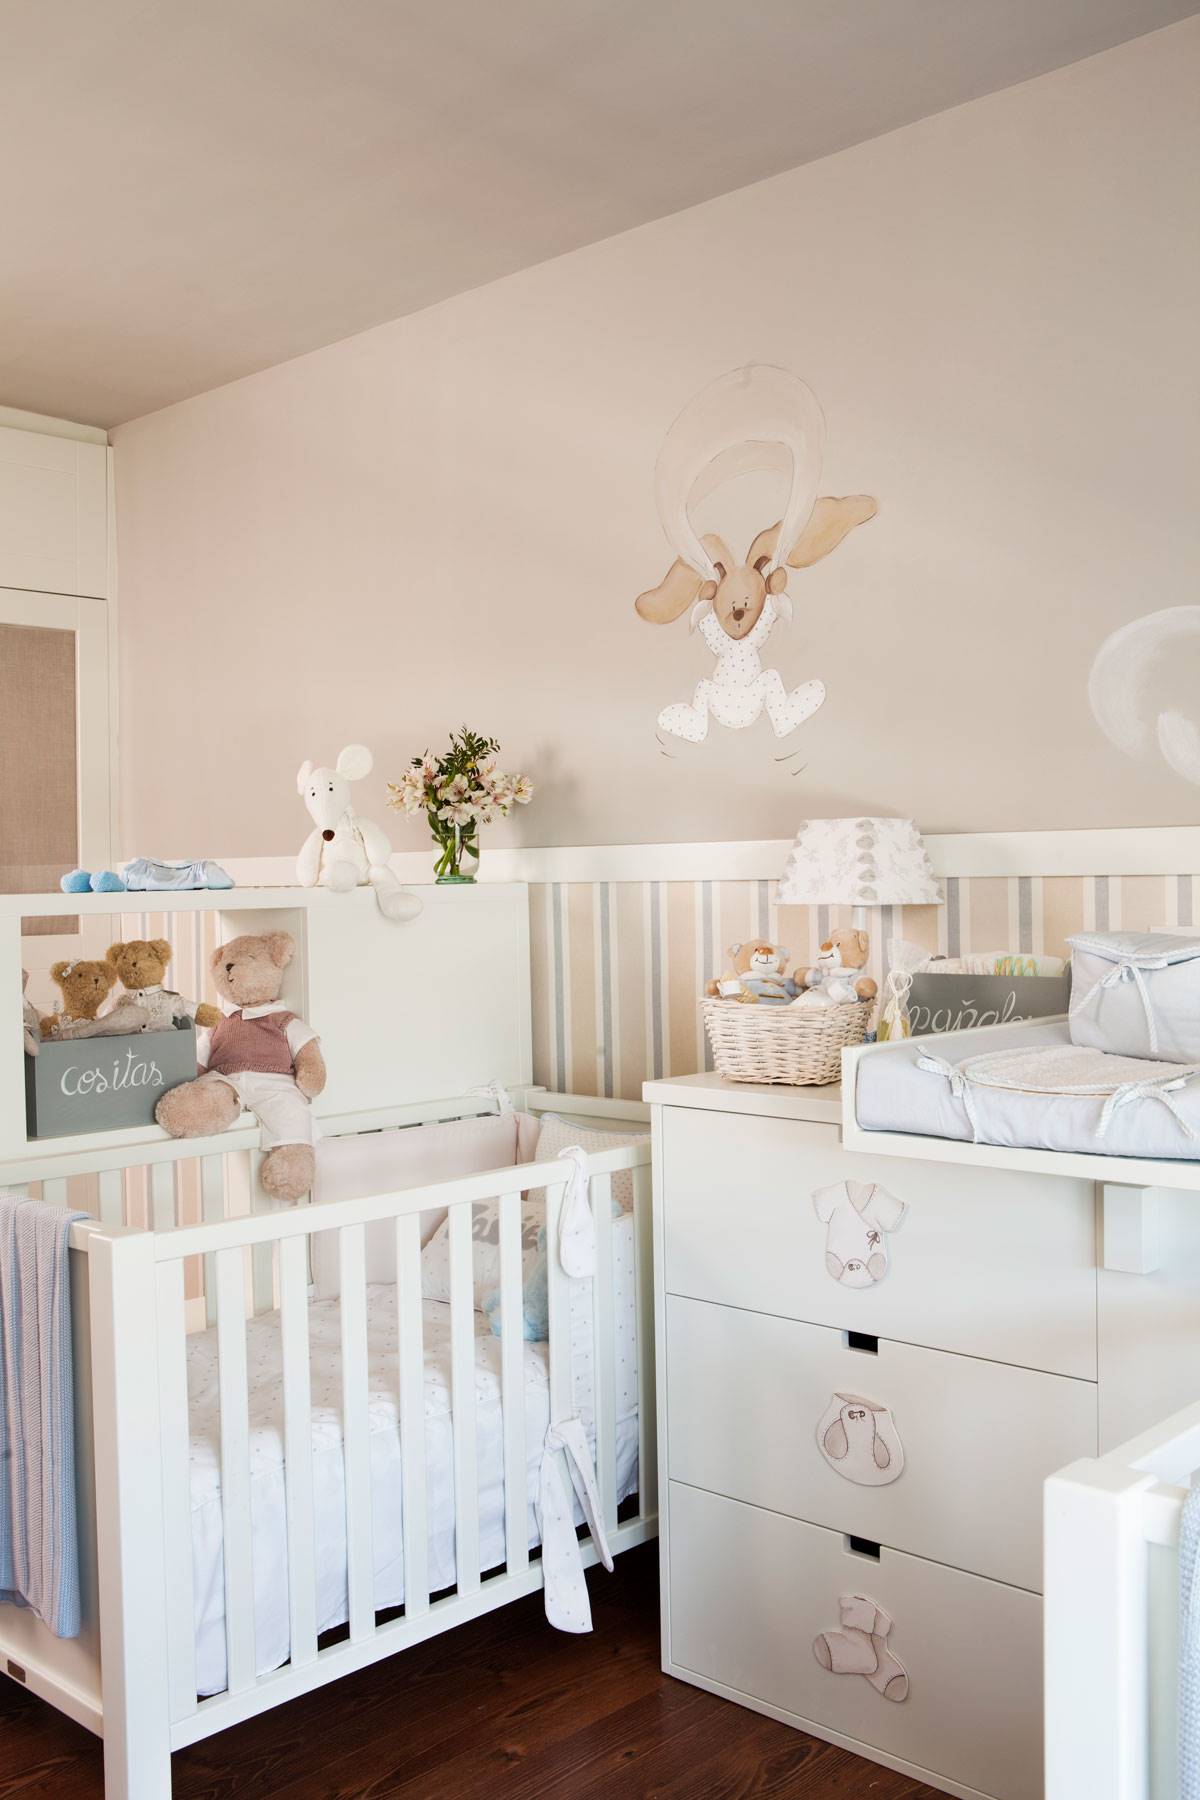 Habitación de bebé con arrimadero, cuna, cambiador y dibujos decorativos en la pared.